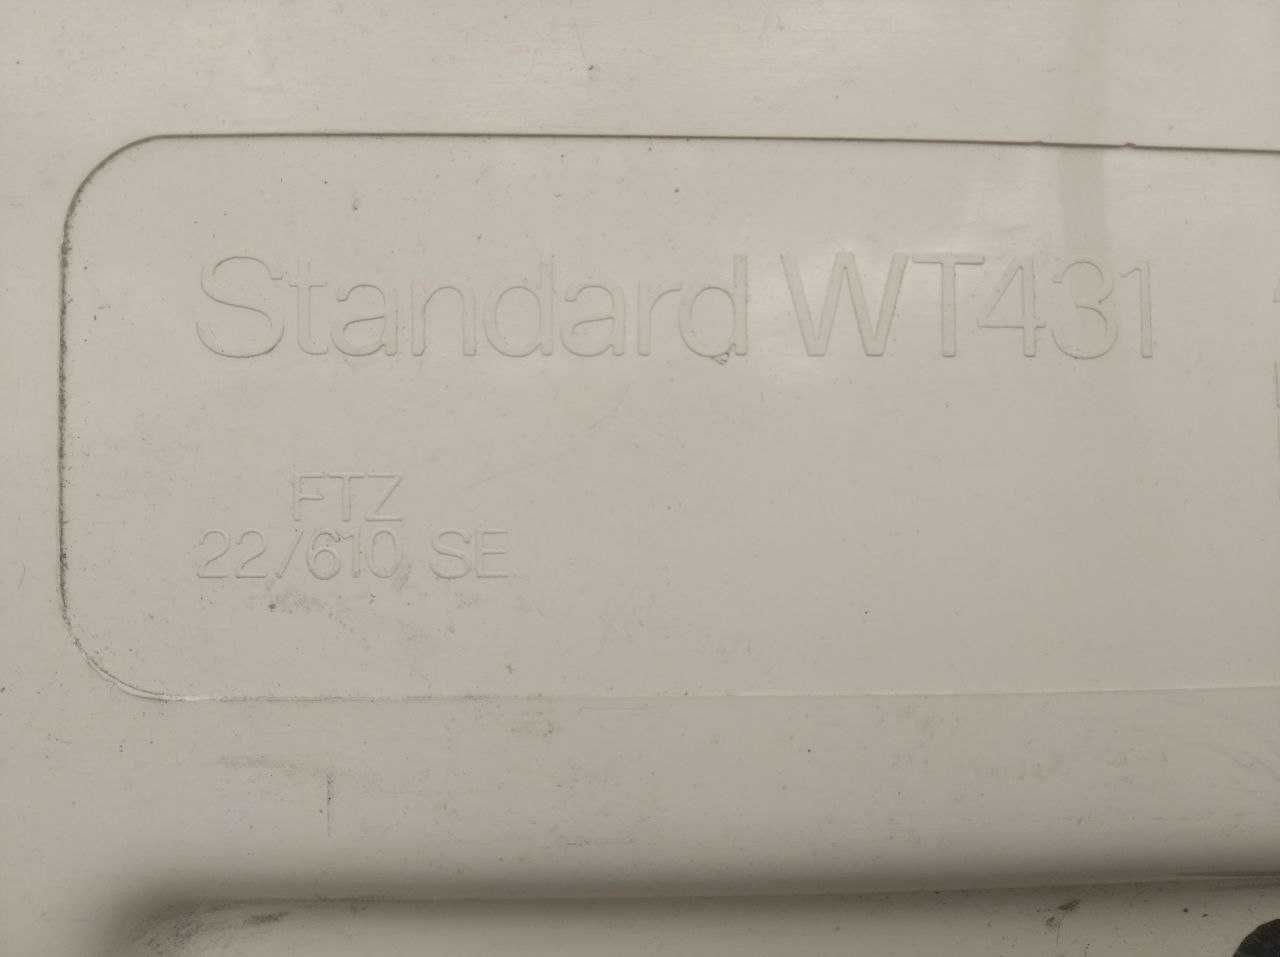 Телевизор Standard WT 431 Германия / ГДР.